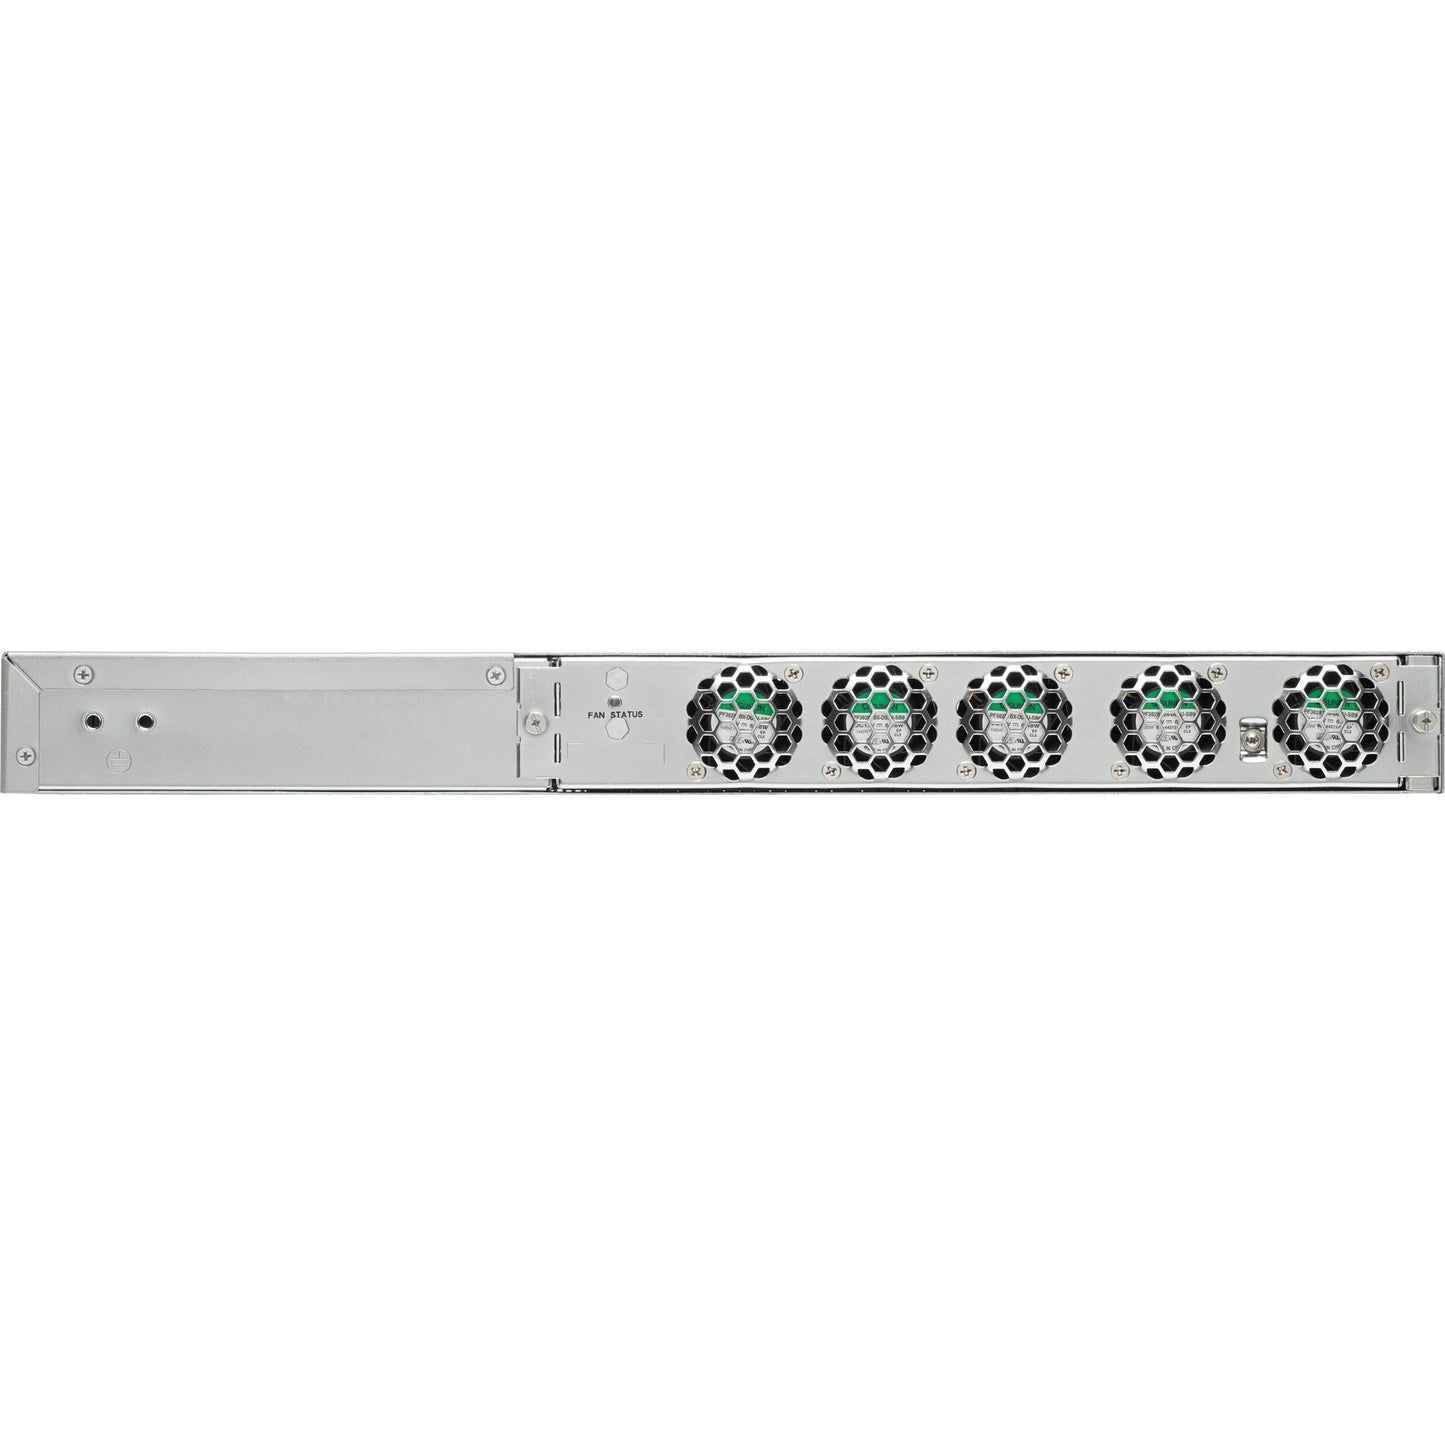 Cisco ASR-920-24TZ-M Router